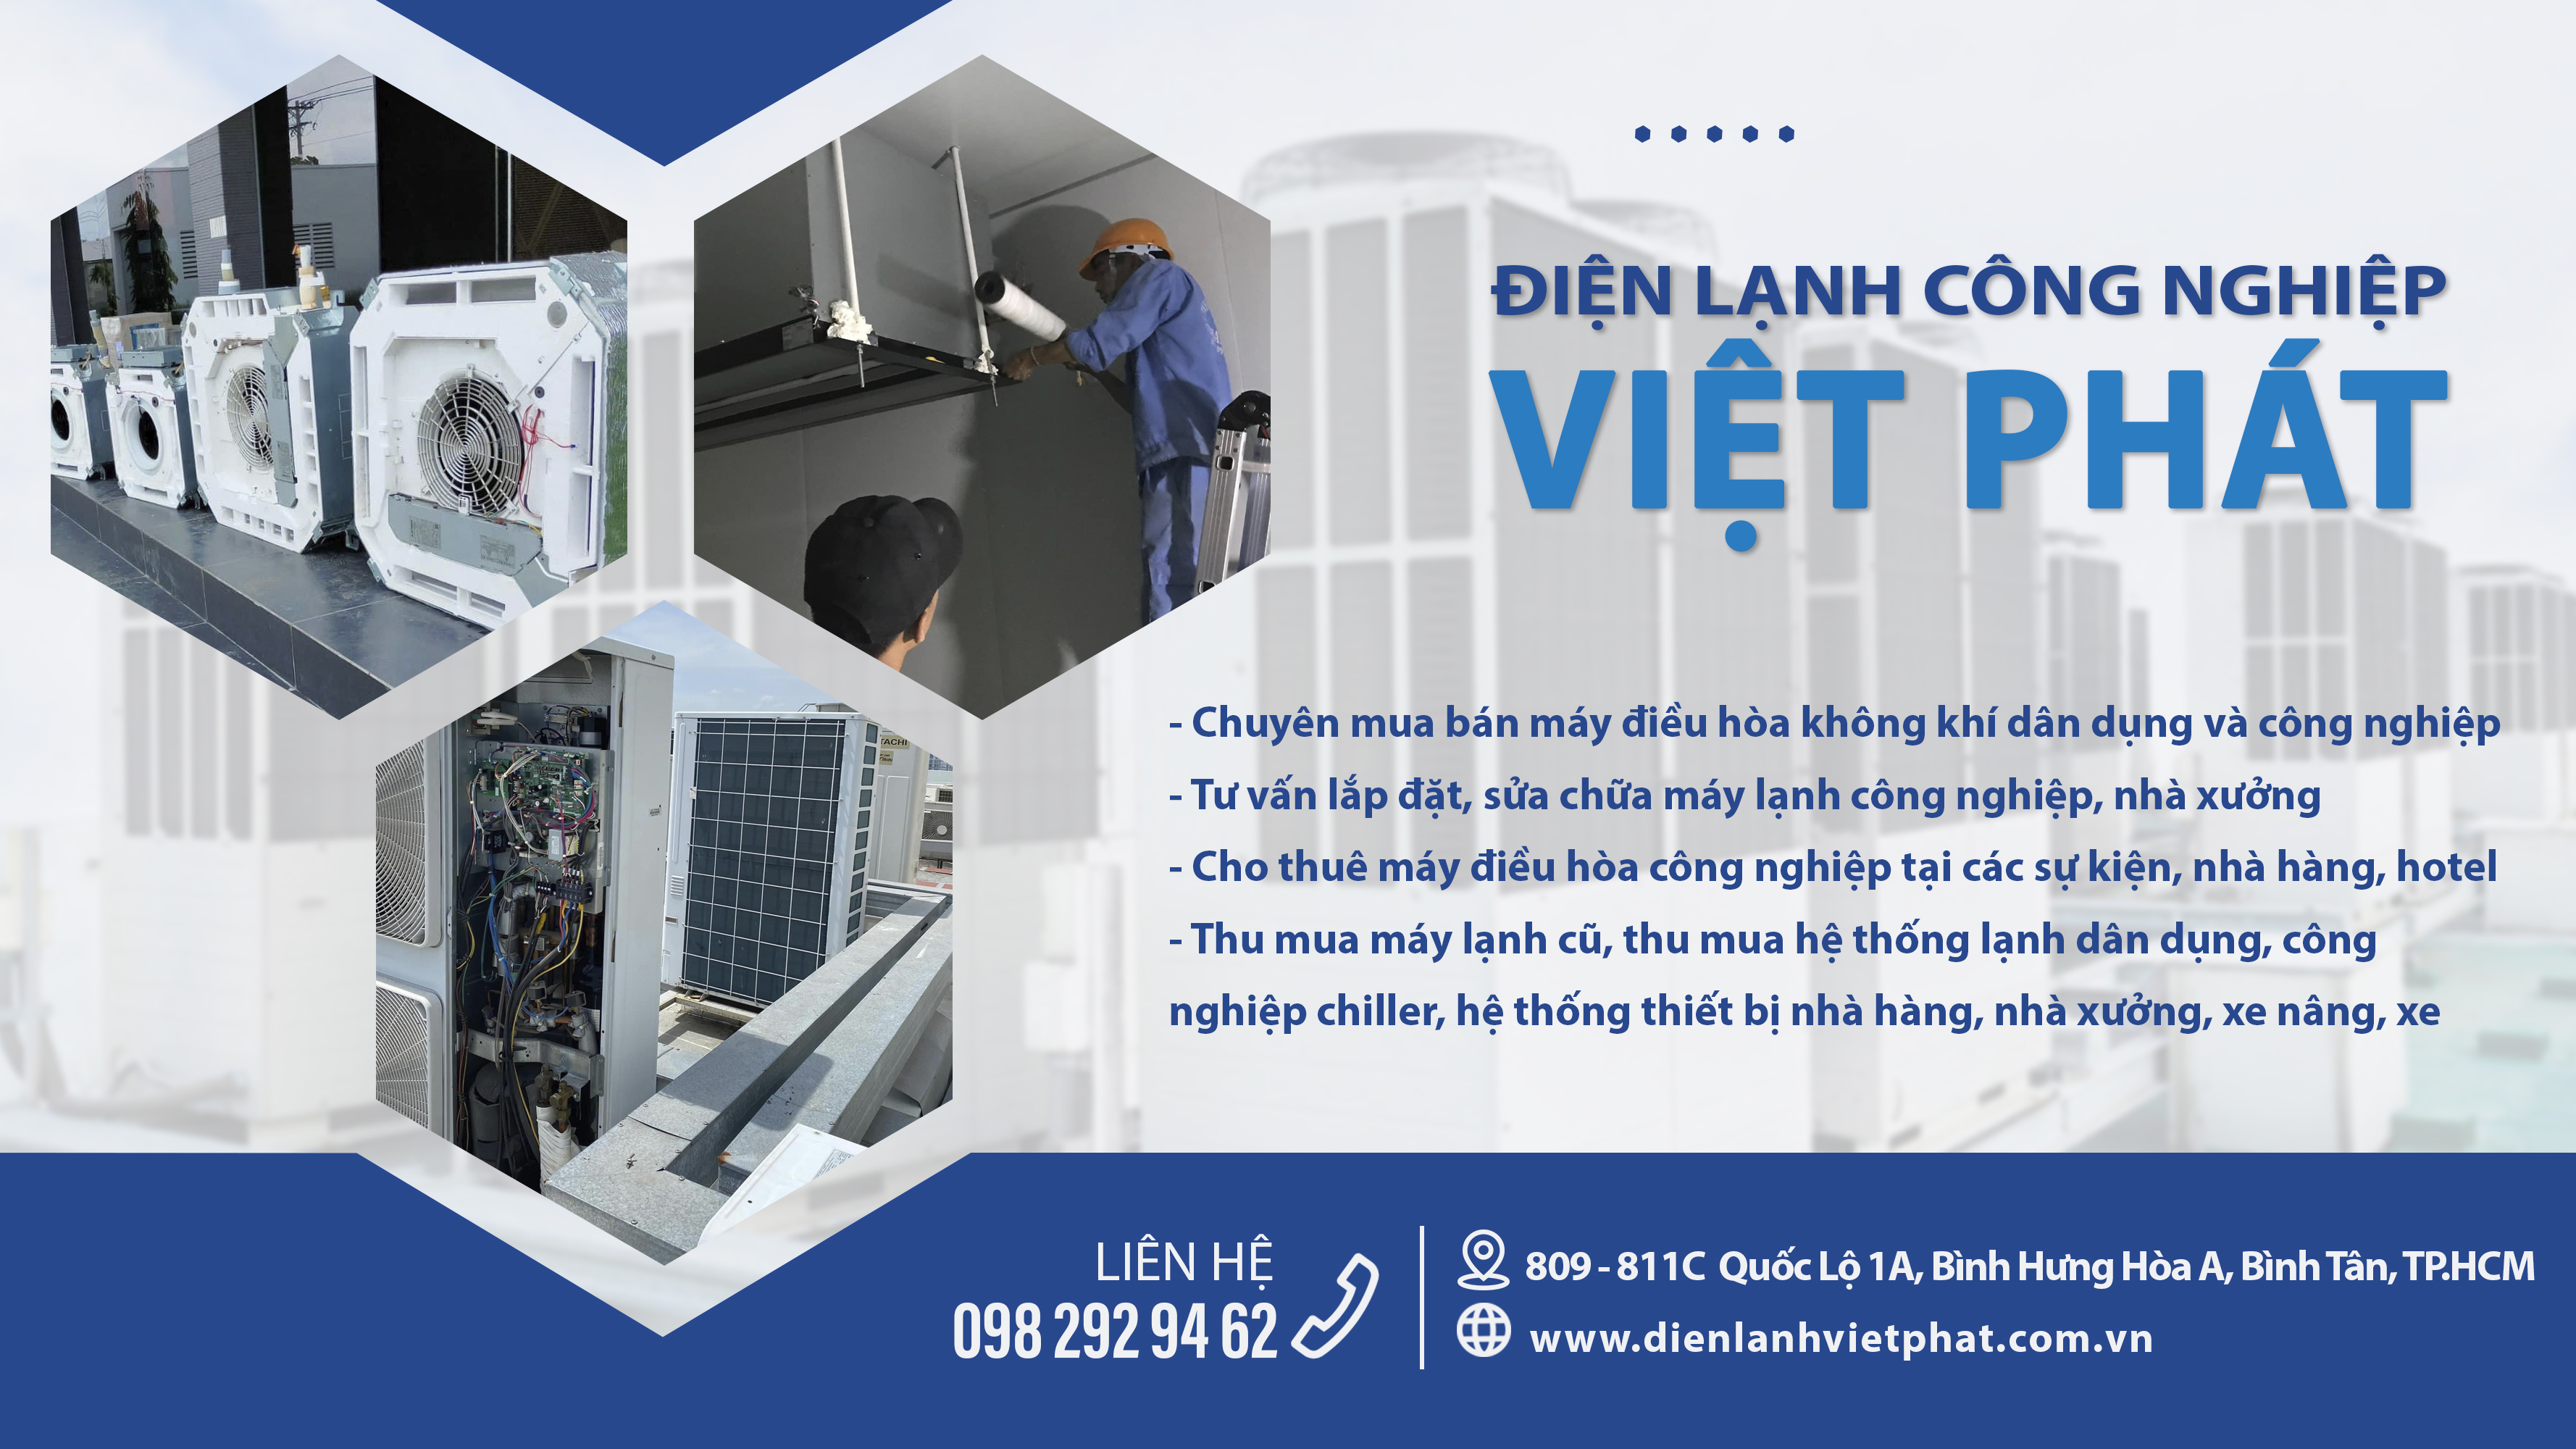 Điện lạnh công nghiệp Việt Phát